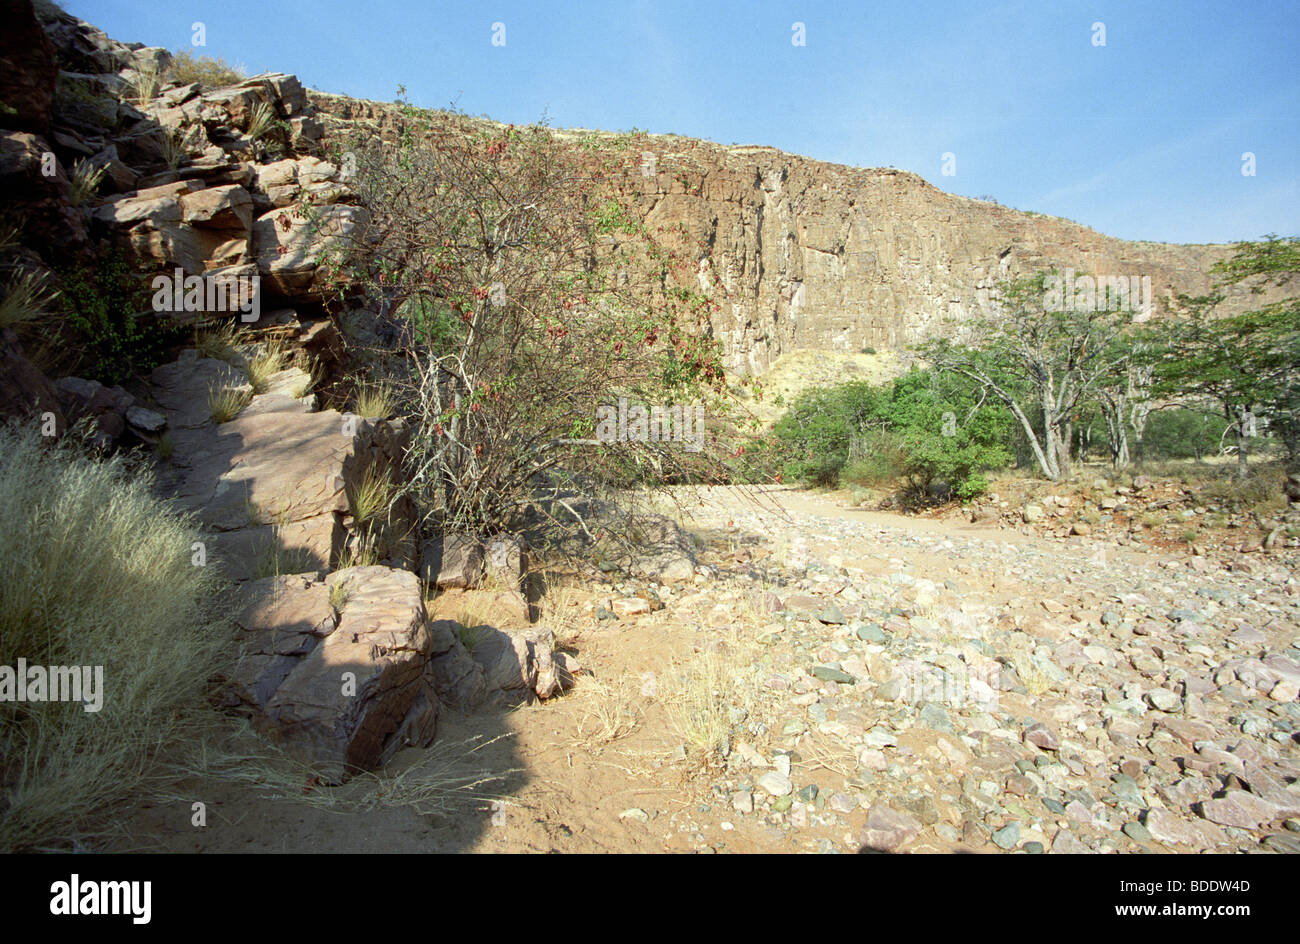 Remote Gorge vicino a Epupa Falls nella regione Kaokoveld della Namibia settentrionale. Foto Stock